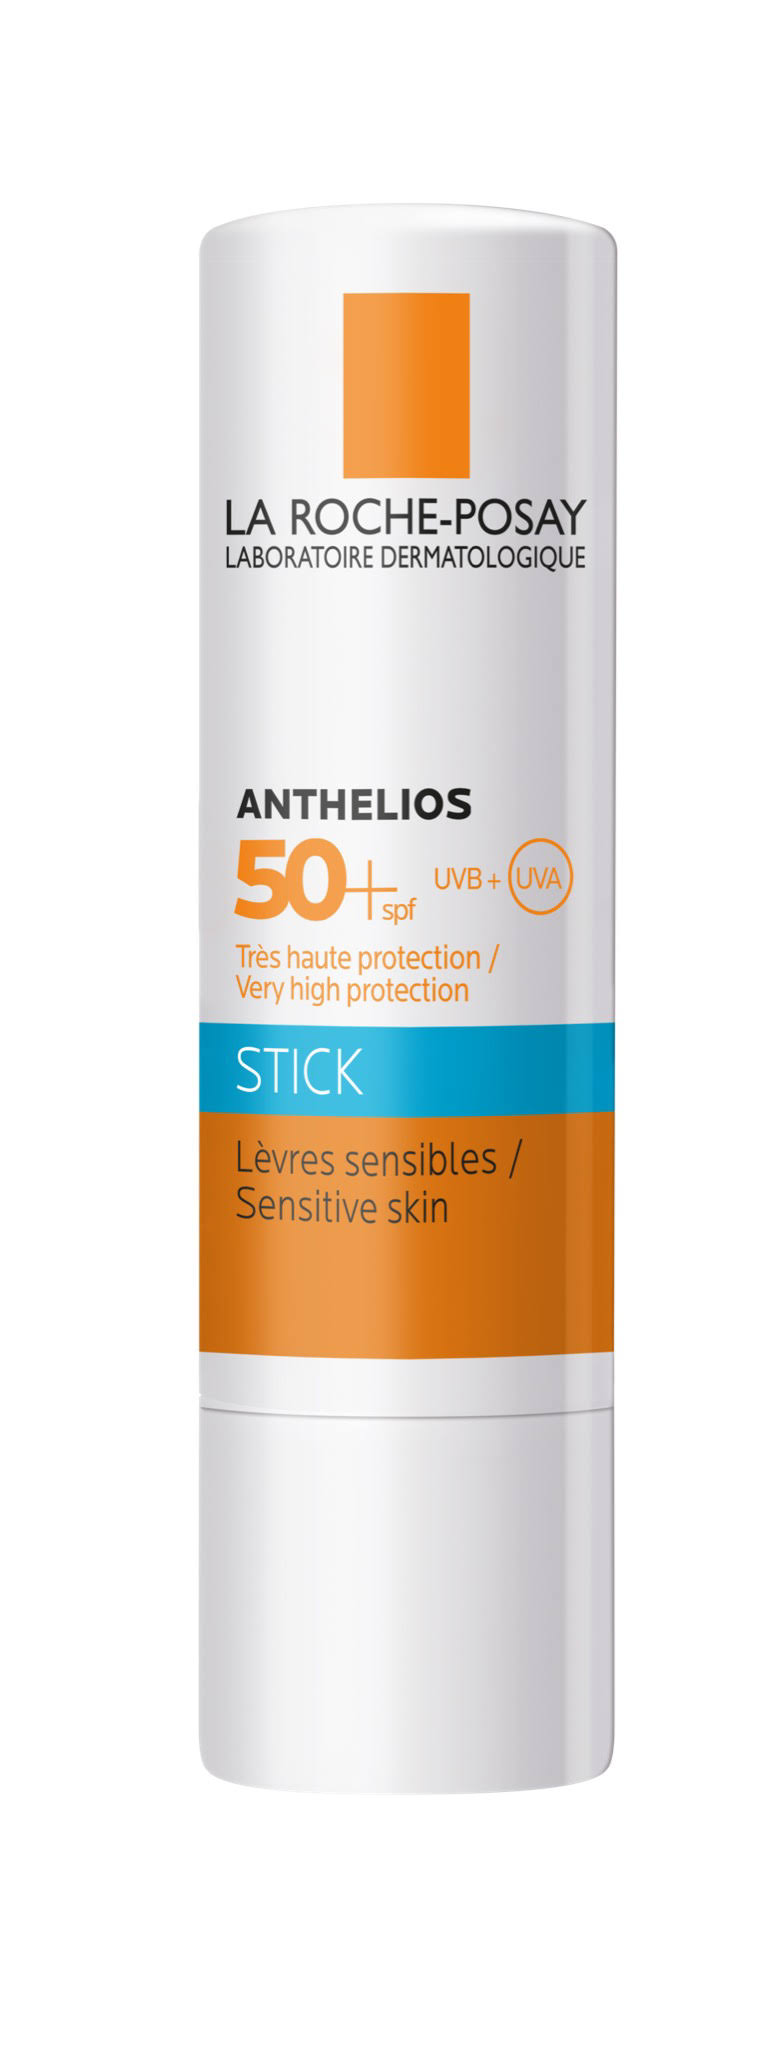 La Roche-Posay Anthelios XL Stick for Sun-Sensitive Areas SPF 50+ - 9g